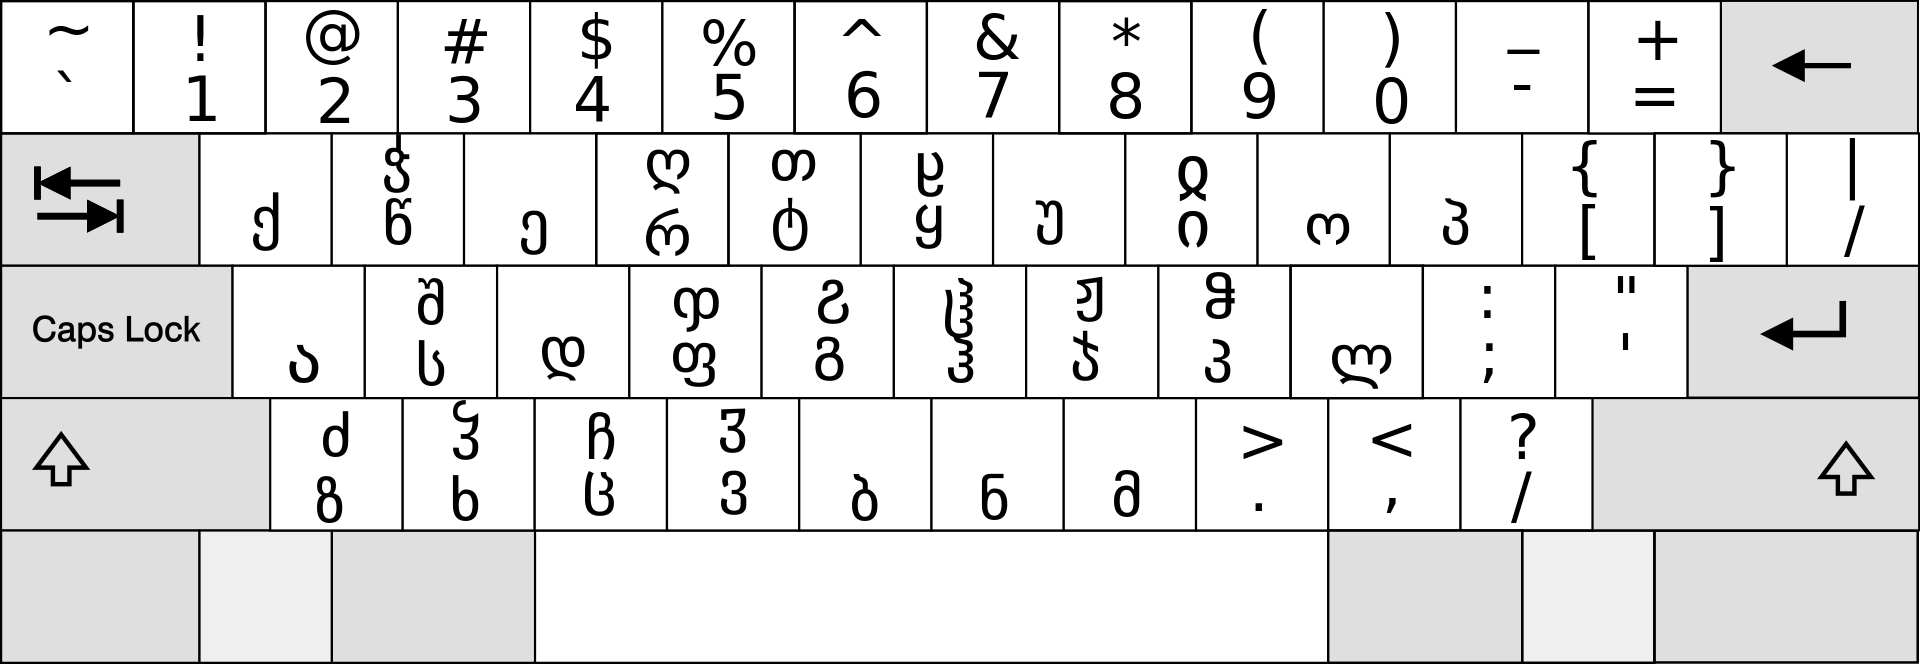 Раскладка латинские буквы. Грузинская раскладка клавиатуры. Грузинская клавиатура кверти. Грузинский алфавит раскладка. Грузинский алфавит на клавиатуре.